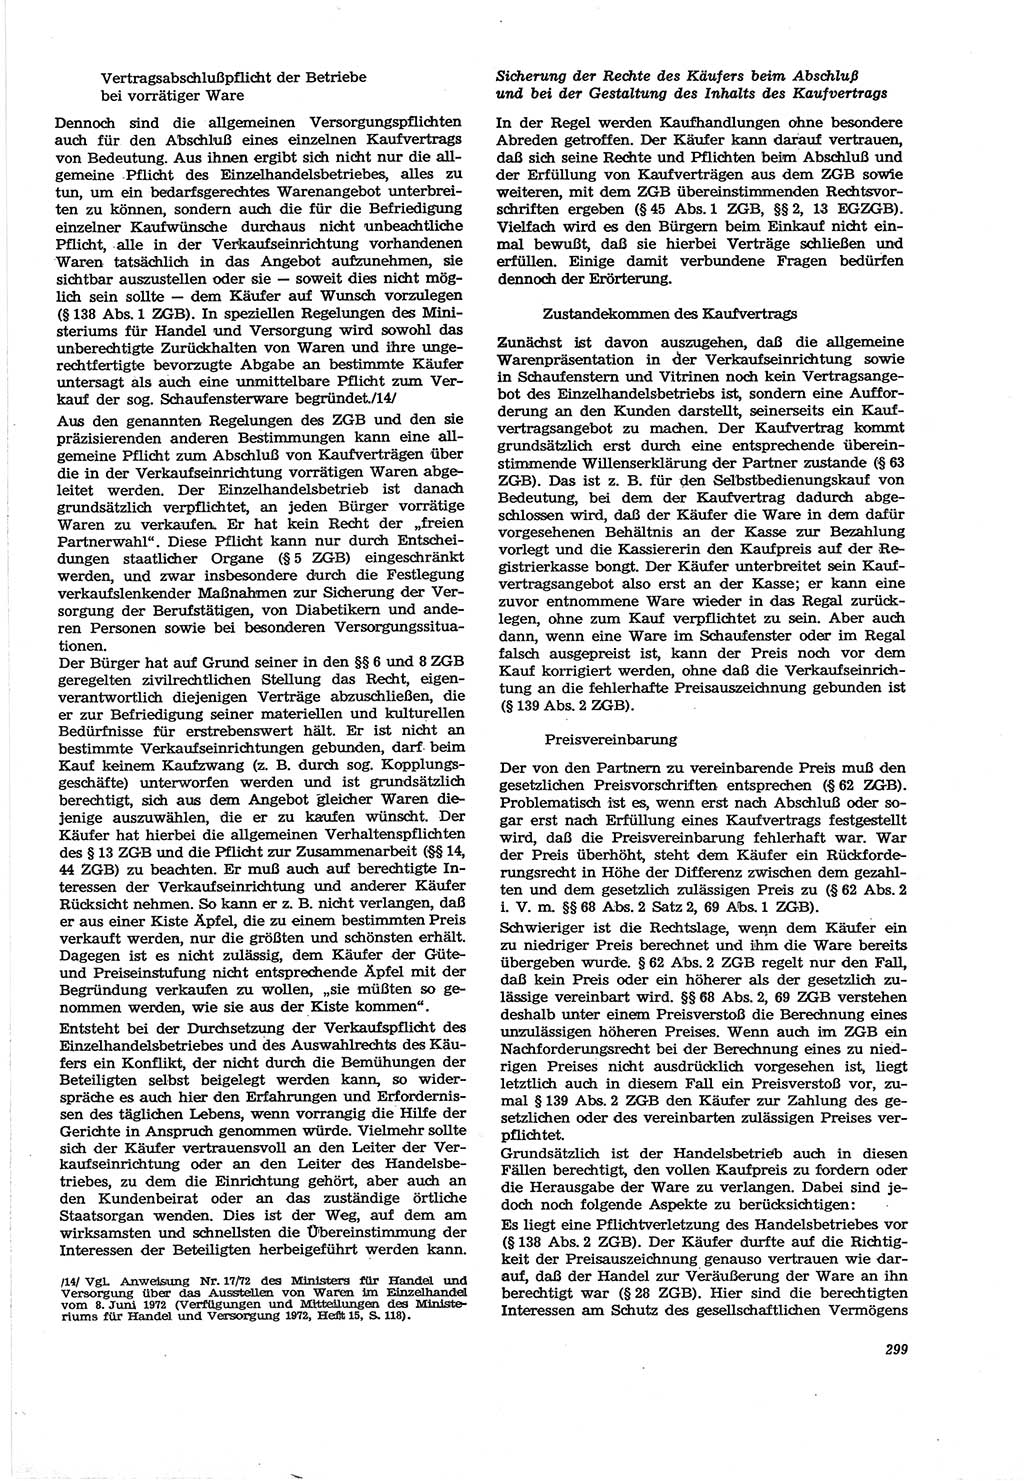 Neue Justiz (NJ), Zeitschrift für Recht und Rechtswissenschaft [Deutsche Demokratische Republik (DDR)], 30. Jahrgang 1976, Seite 299 (NJ DDR 1976, S. 299)